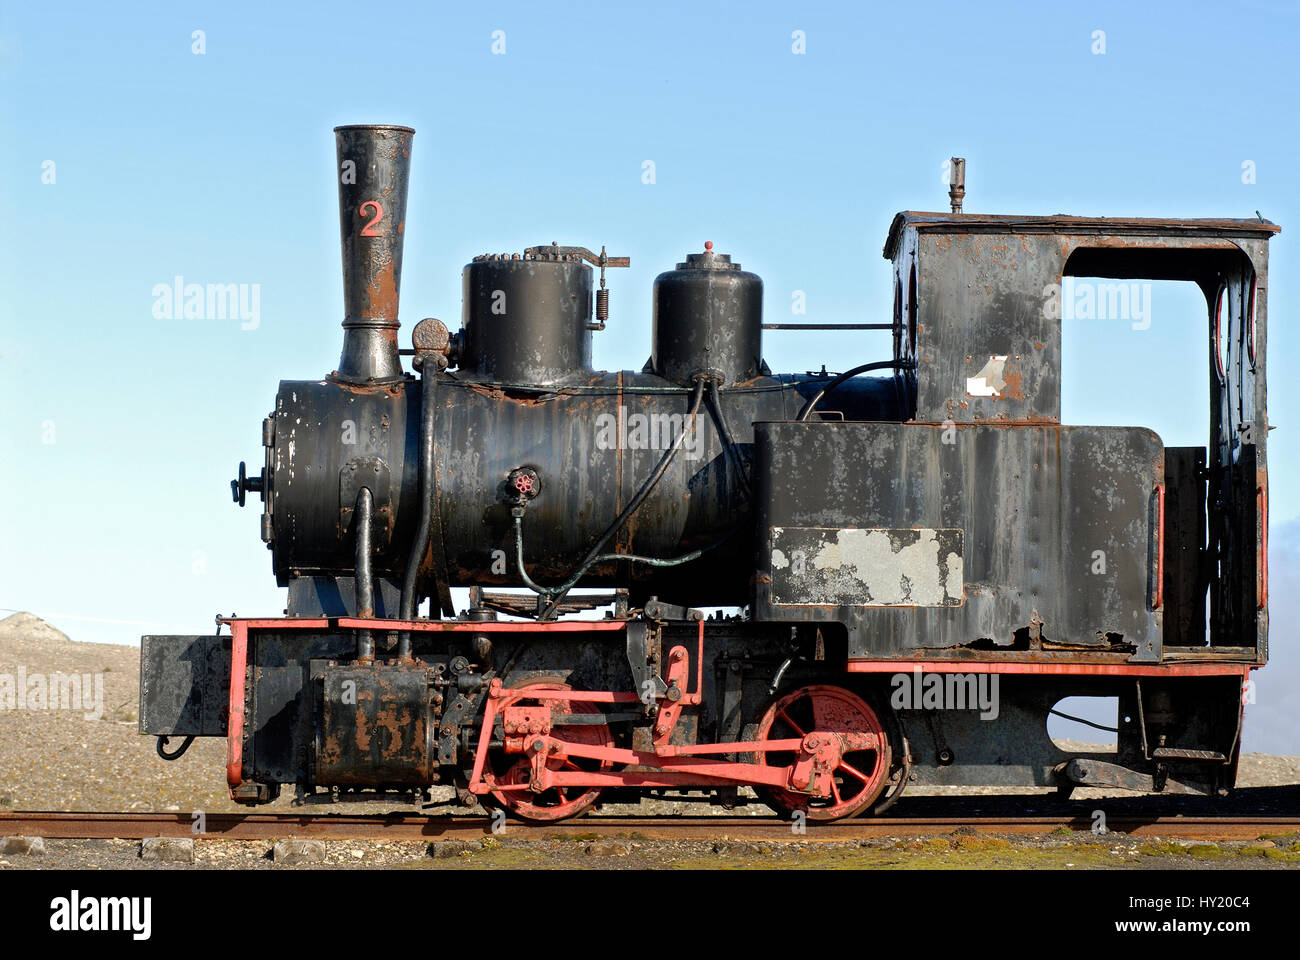 Lo stock foto mostra un dettaglio di una miniera aboundoned treno sul display in remoto villaggio di Ny Alesund in Spitzbergen che appartiene alla Norvegia. Questo Foto Stock